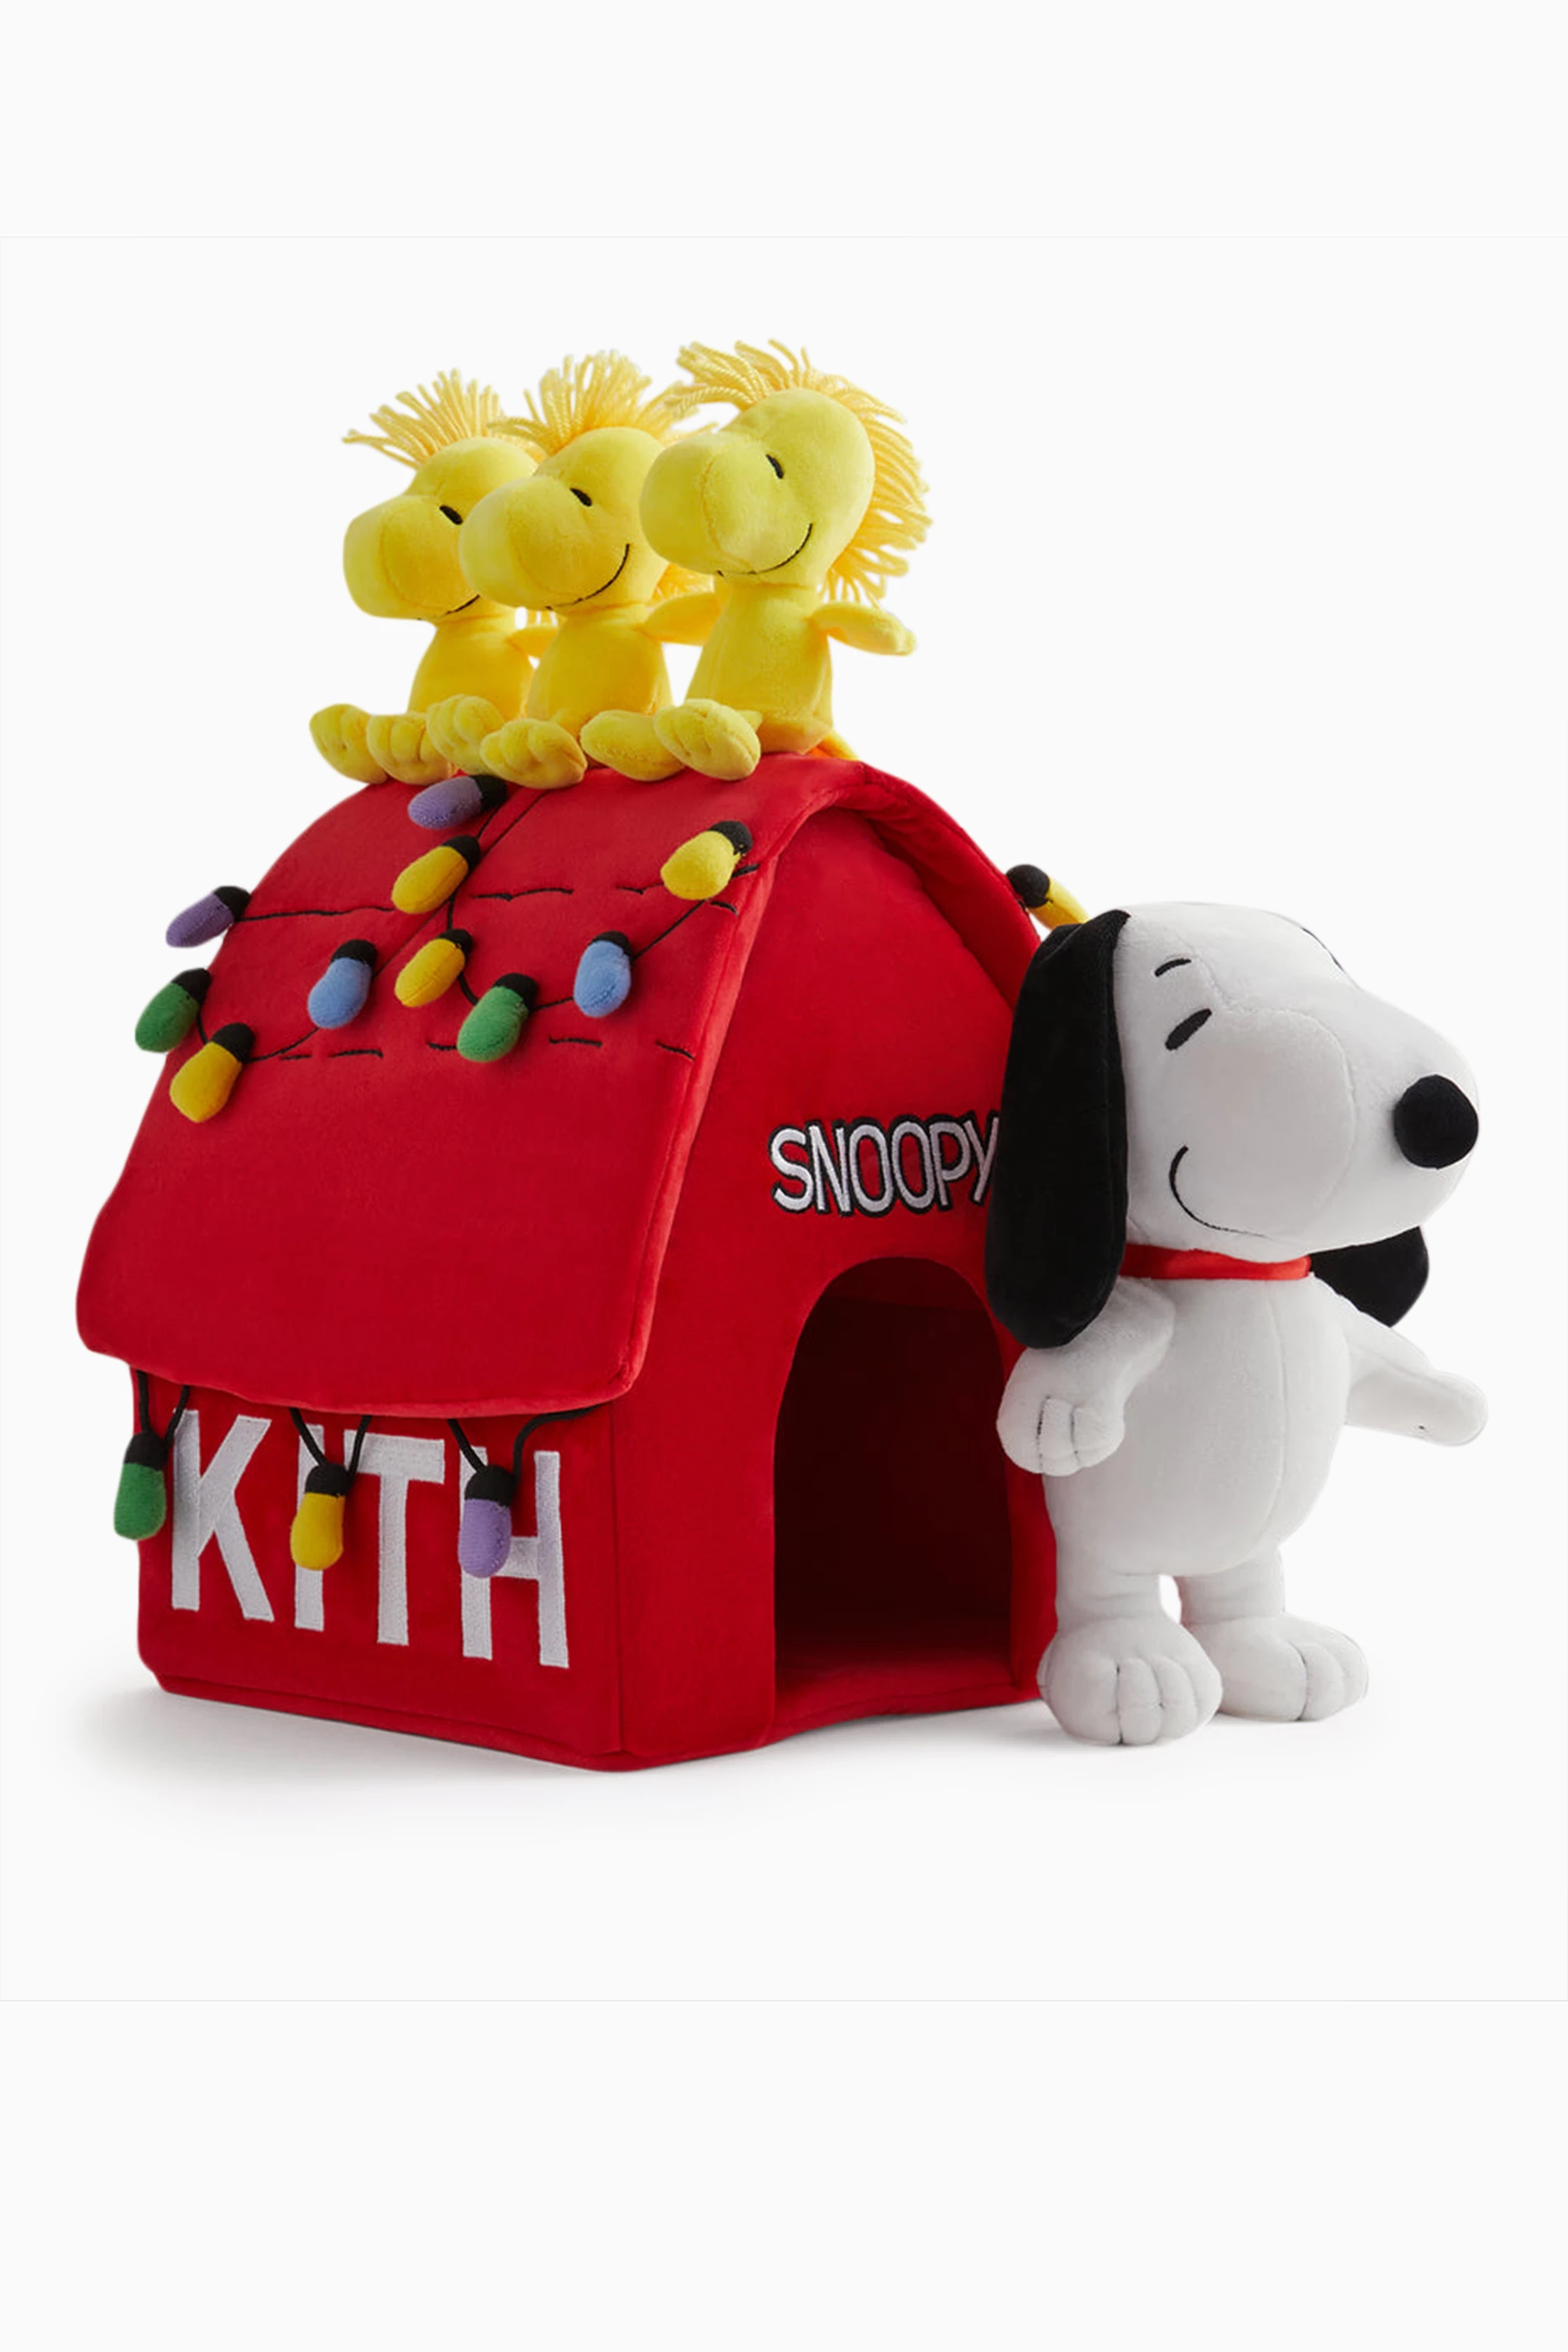 10,800円Kith Snoopy Kithmas dog house plush